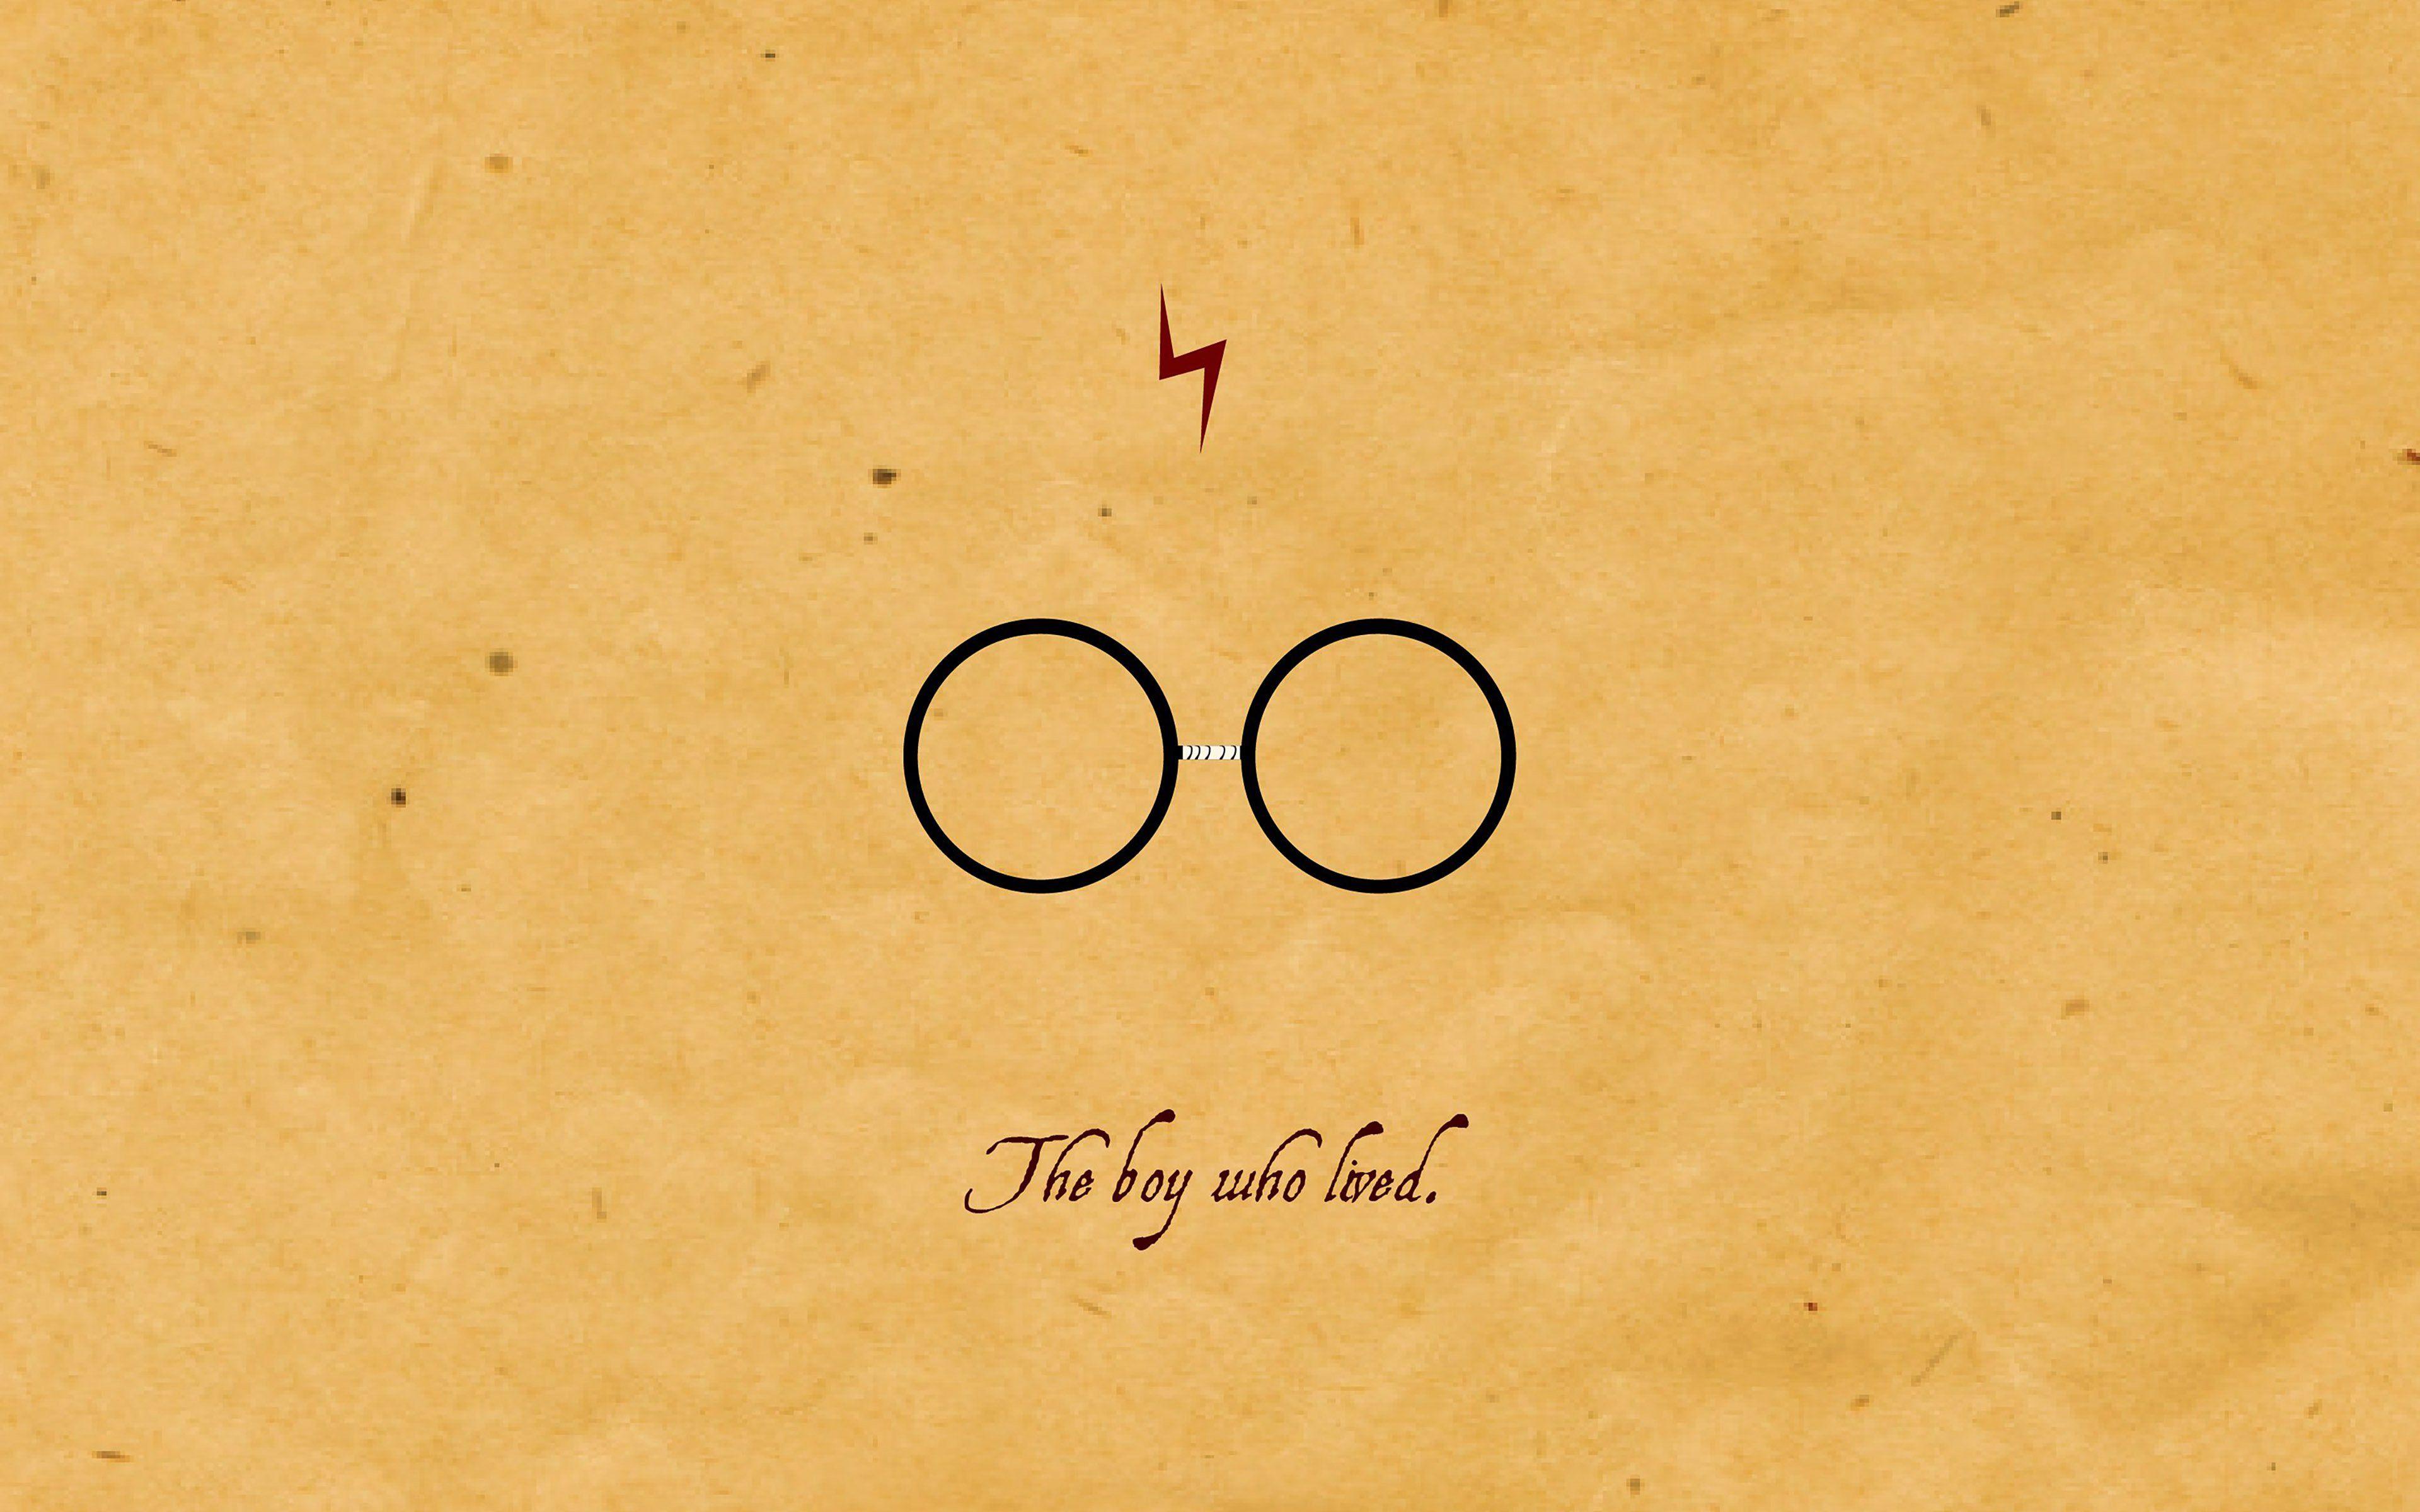 Hình nền Harry Potter đẹp  Ảnh nền wallpaper Harry Potter